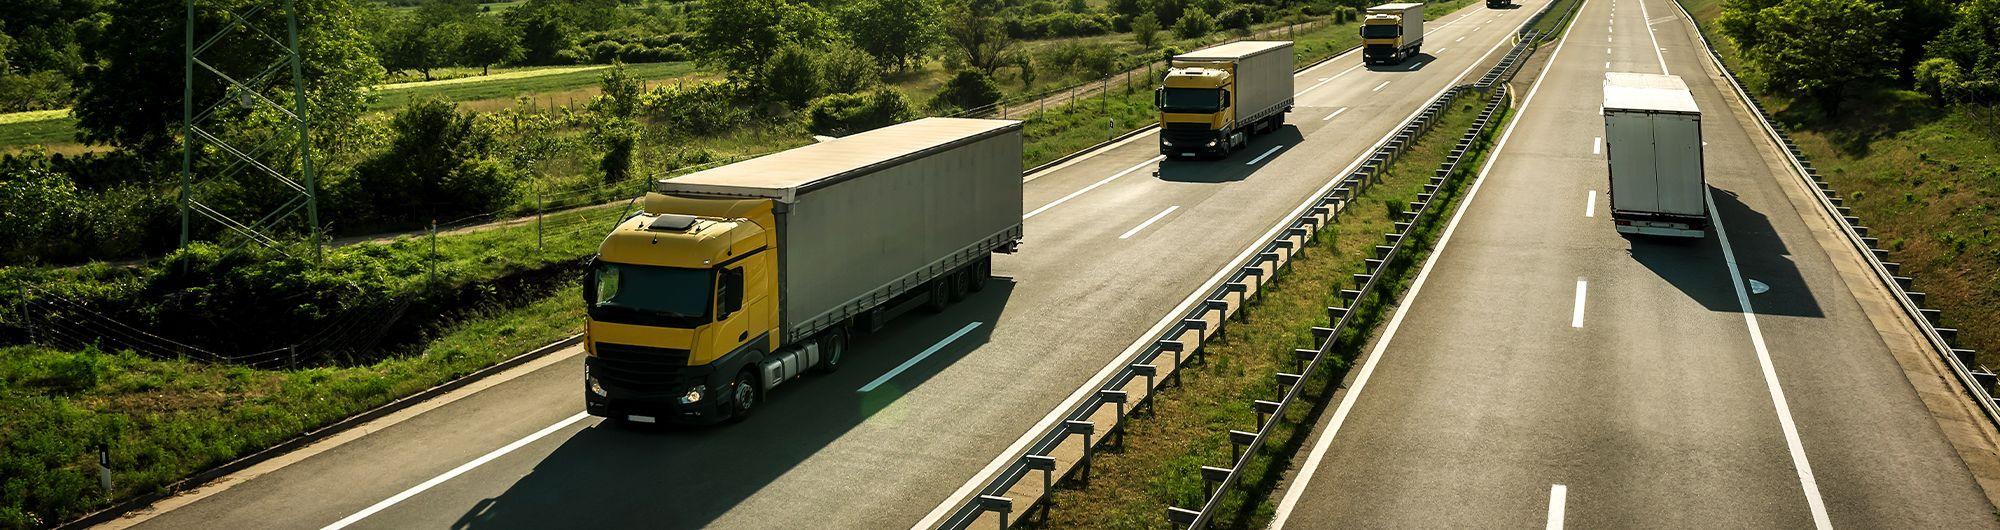 caminhões de transporte se movimentando em rodovia 